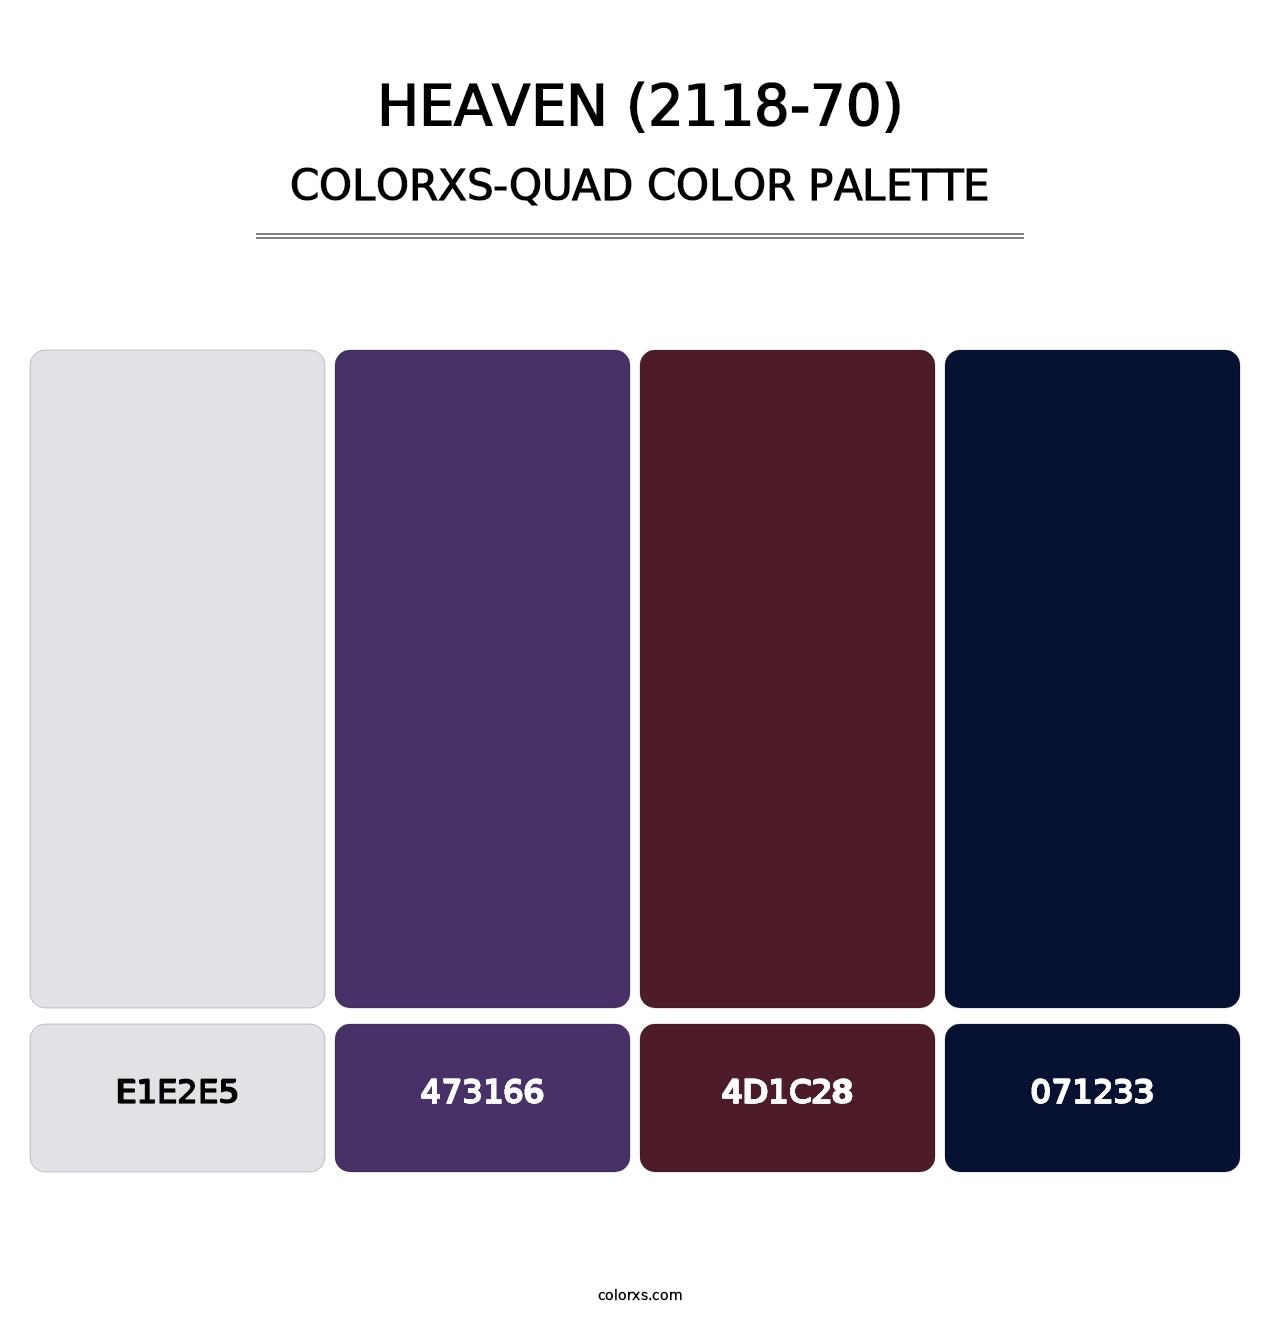 Heaven (2118-70) - Colorxs Quad Palette